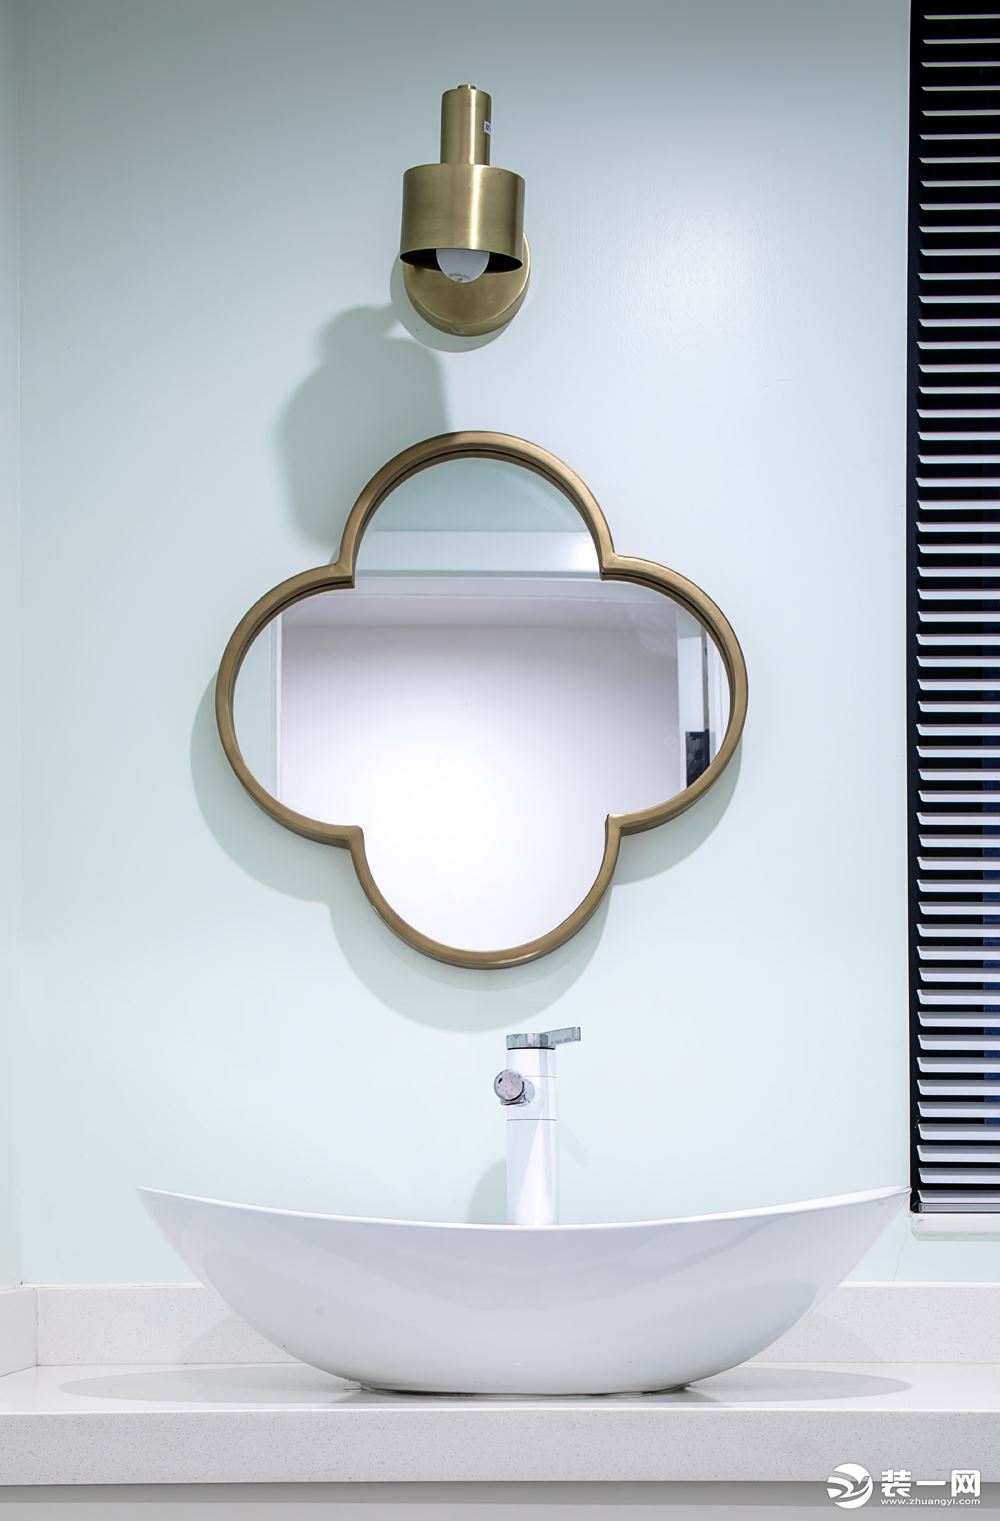 这面镜子的设计和厕所的设计搭配是完美的